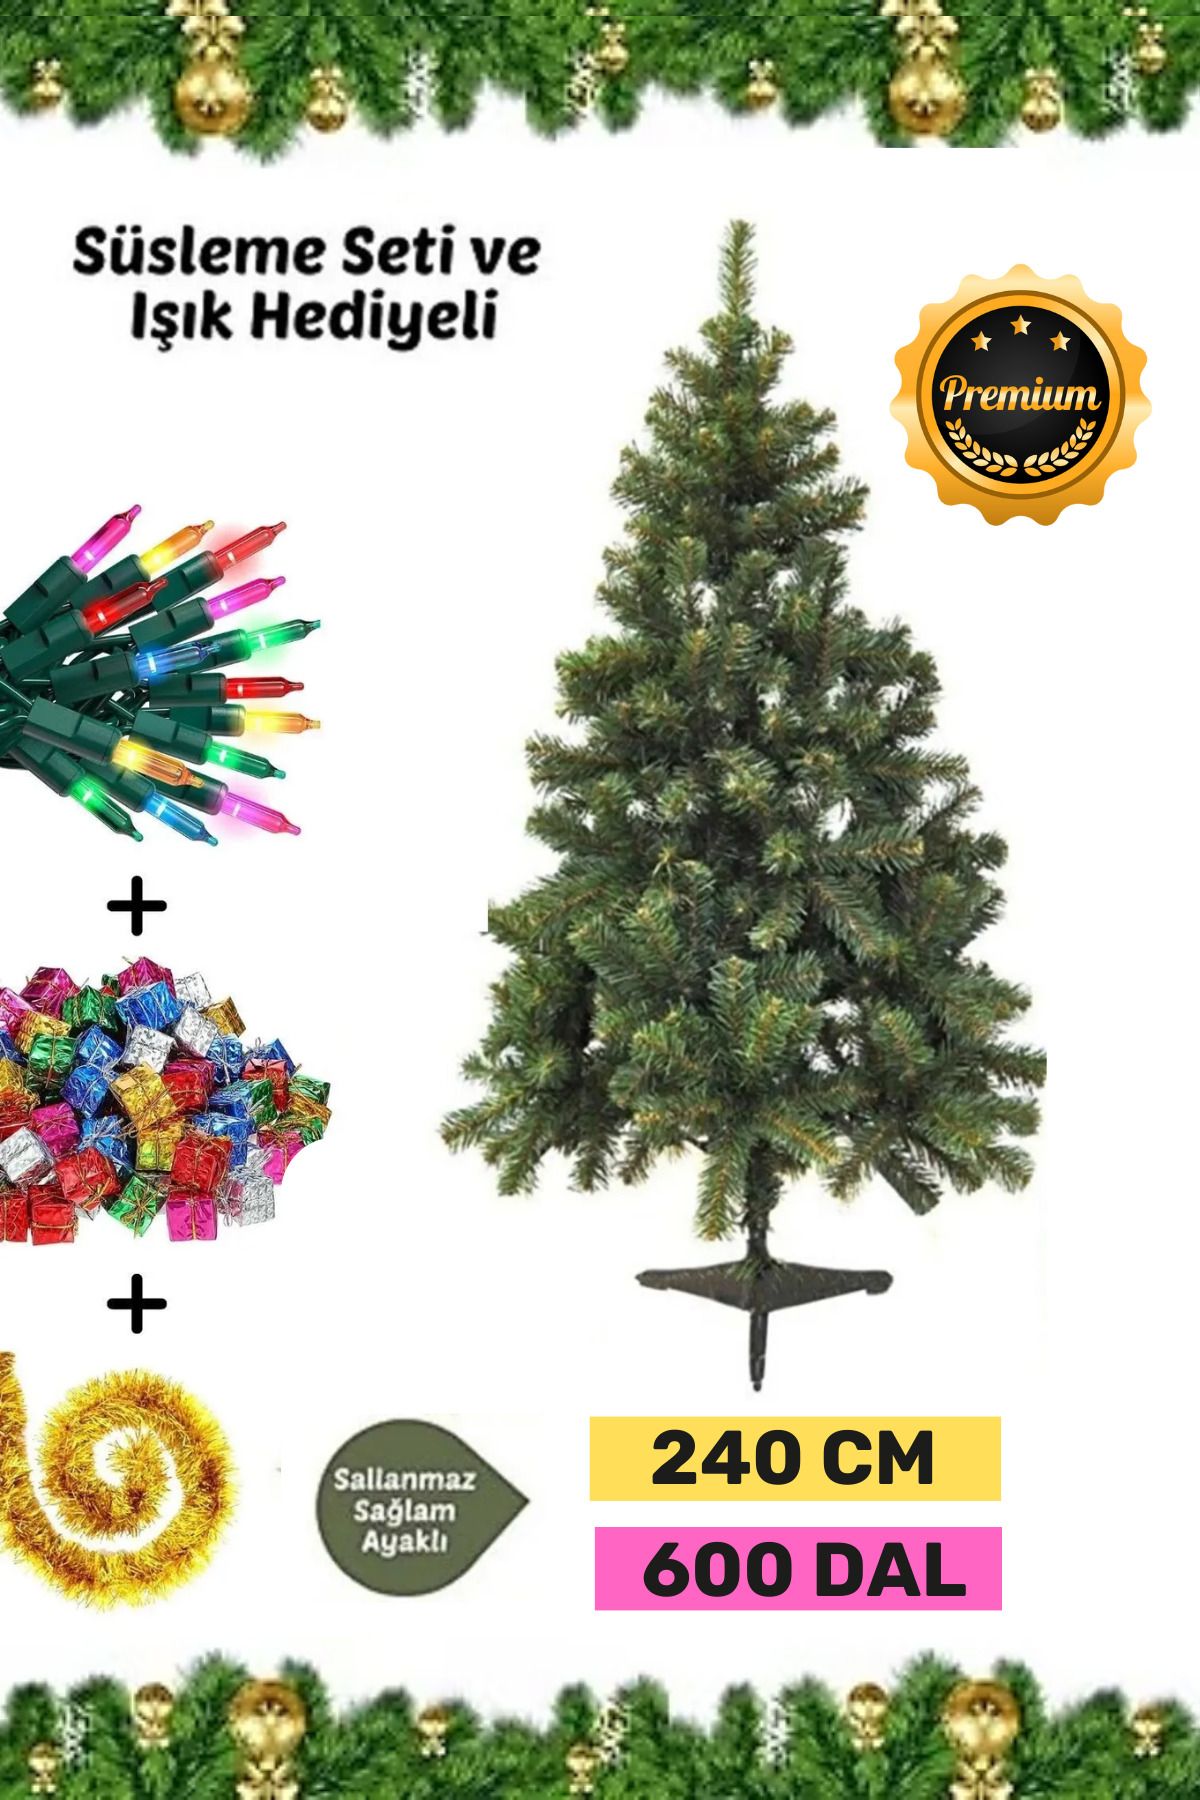 Carlburn Premium Kutu Süsleme Seti Yılbaşı Çam Ağacı Renkli Işığı Yeni Yıl Süsleri Noel Paketi 240 Cm 600 Dal